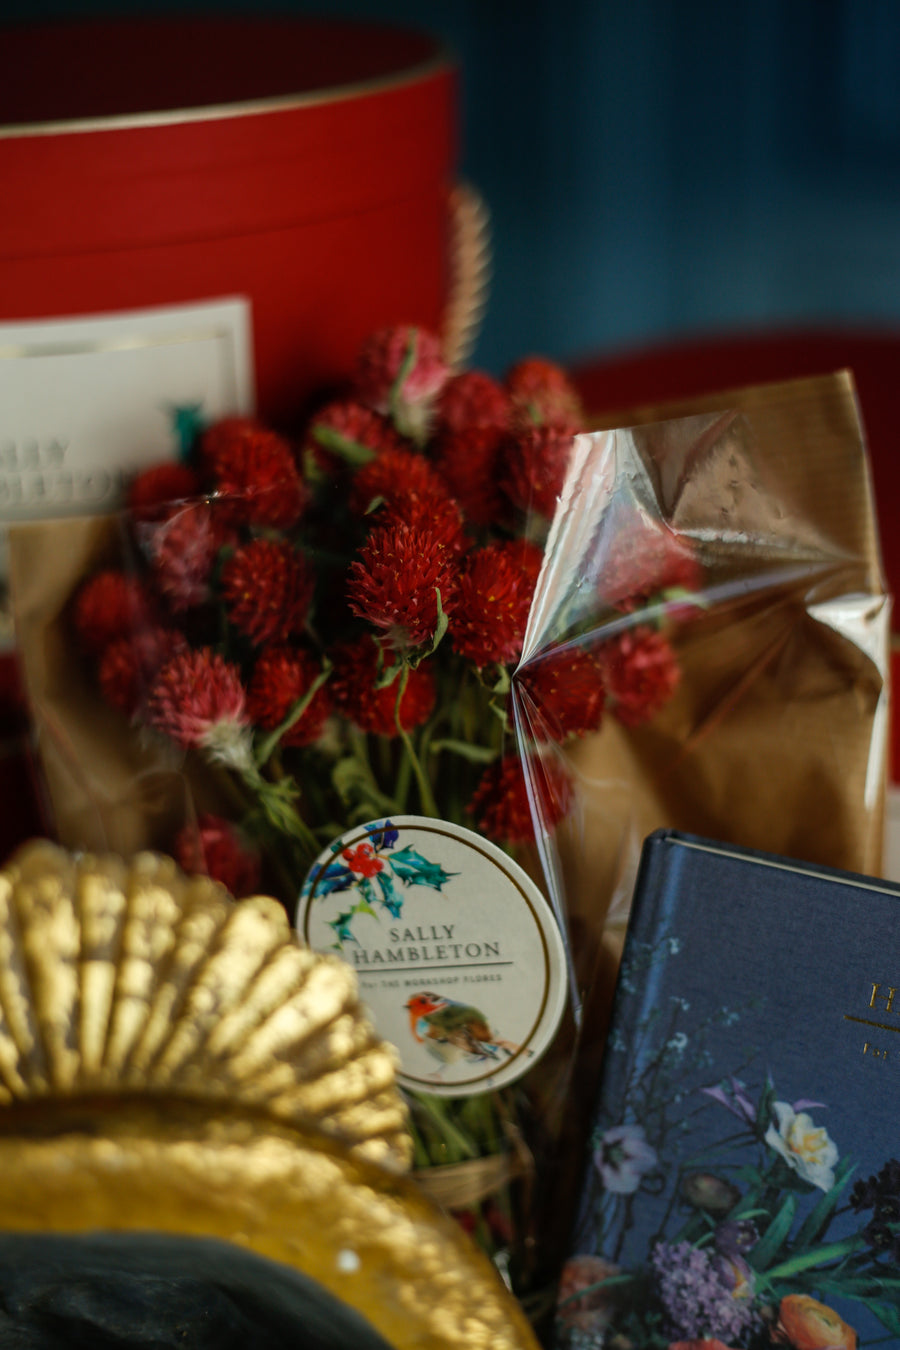 luxury-box-sombrerera-roja-velas-nacimiento-flores-secas-navidad-regalo-sally-hambleton-04